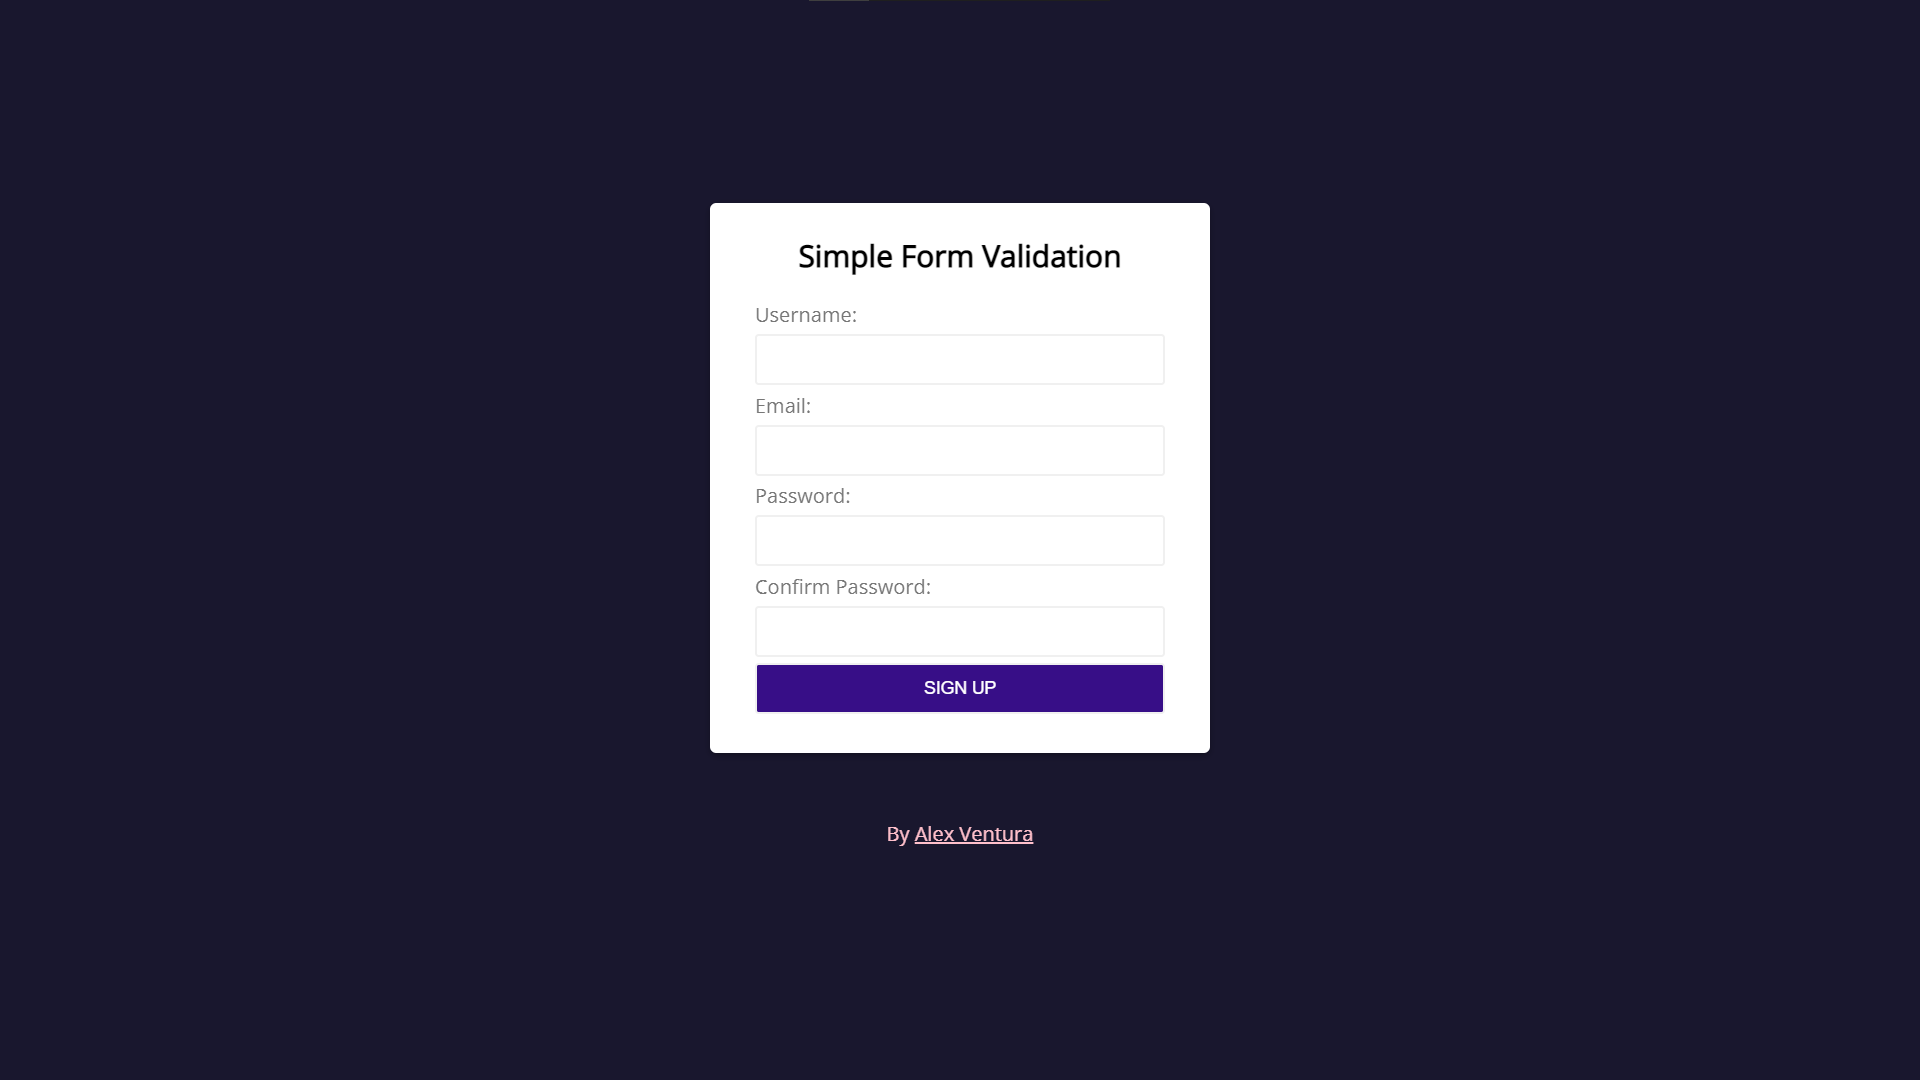 Simple Form Validation